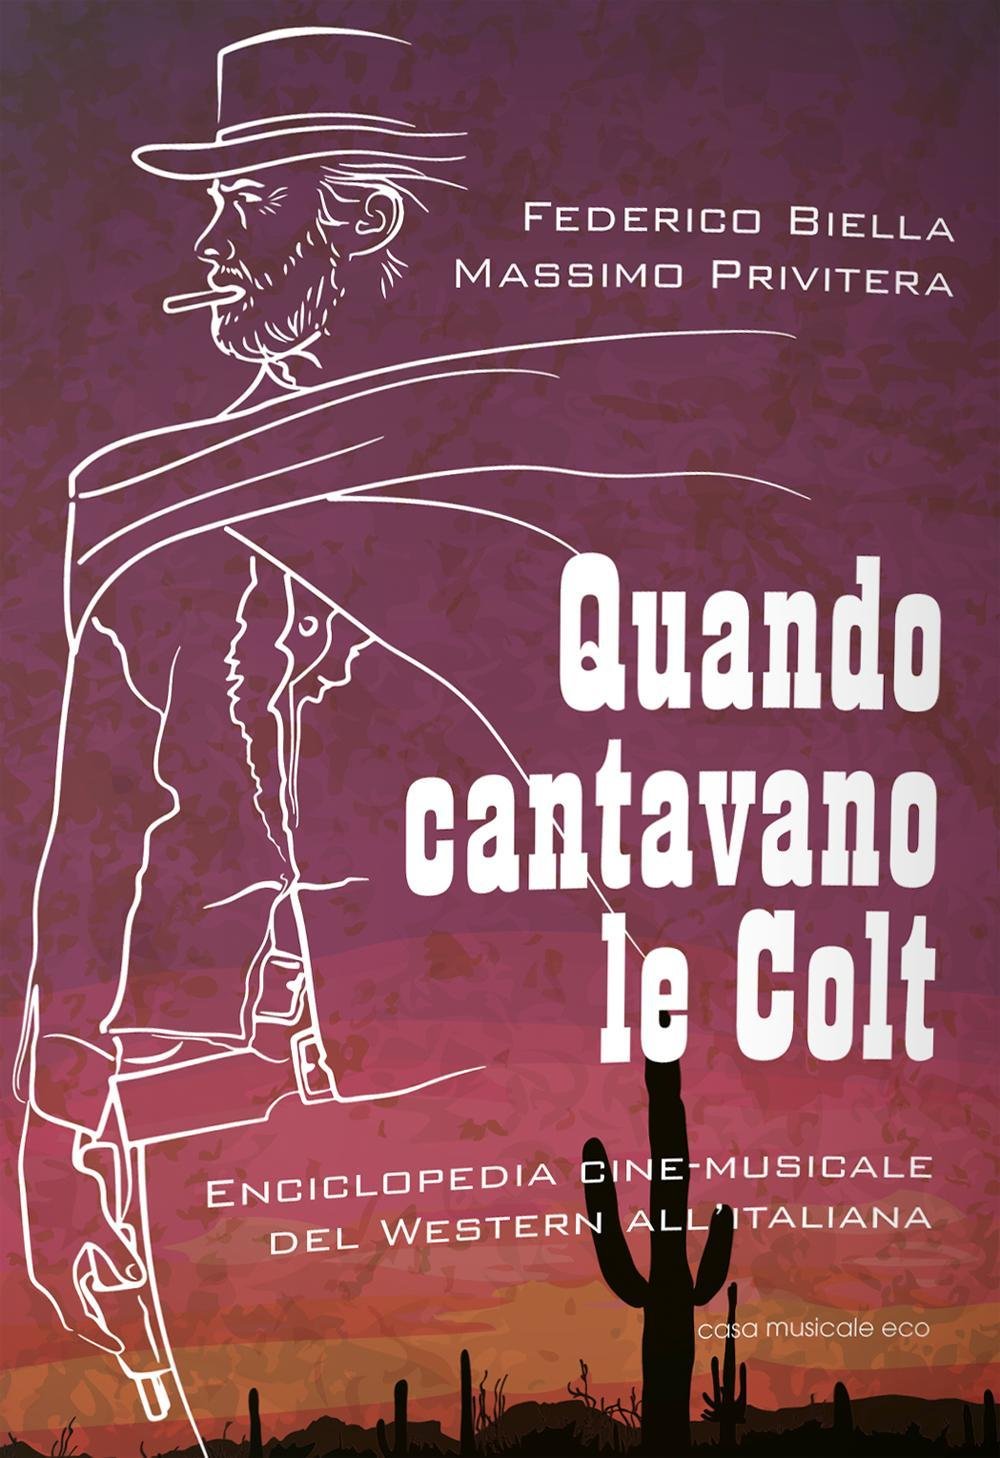 Quando cantavano le Colt - Enciclopedia cine-musicale del Western all’italiana